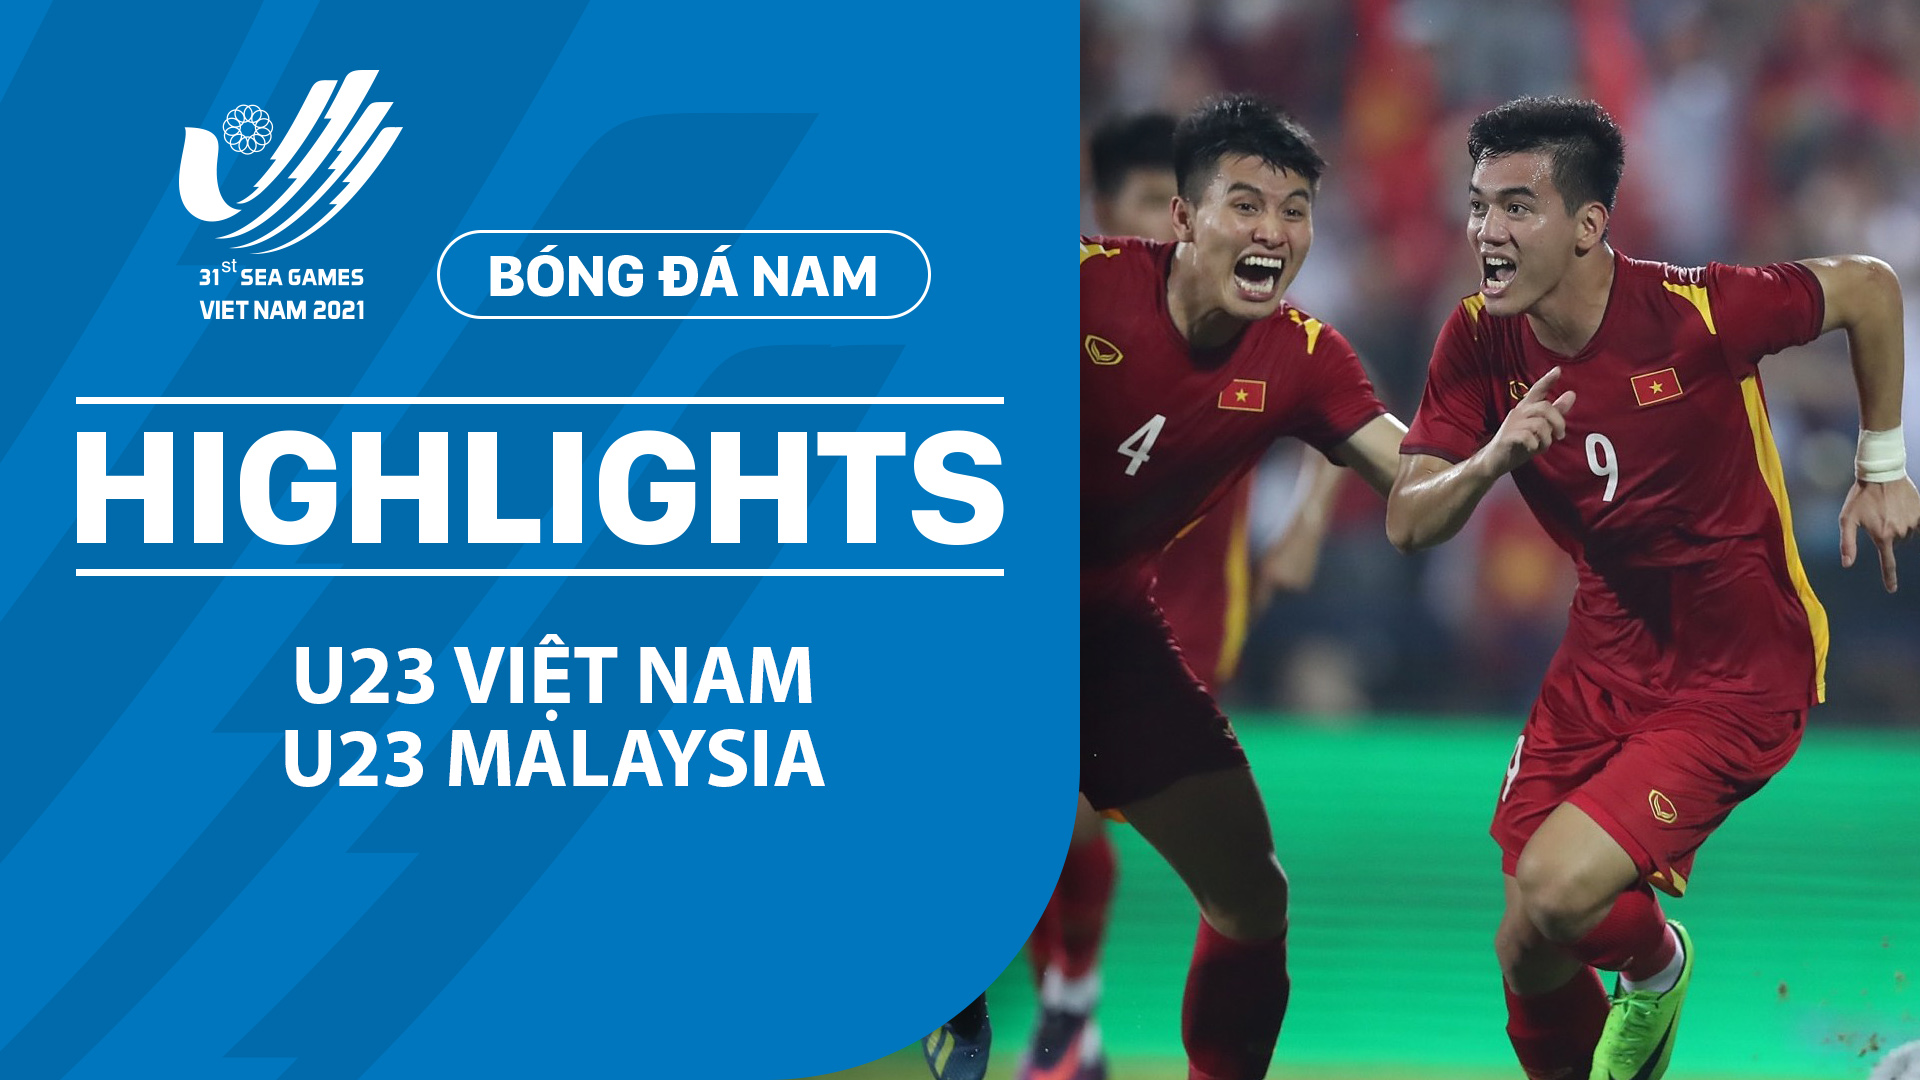 U23 Việt Nam - U23 Malaysia | Khoảnh khắc vỡ òa - Highlights SEA Games 31